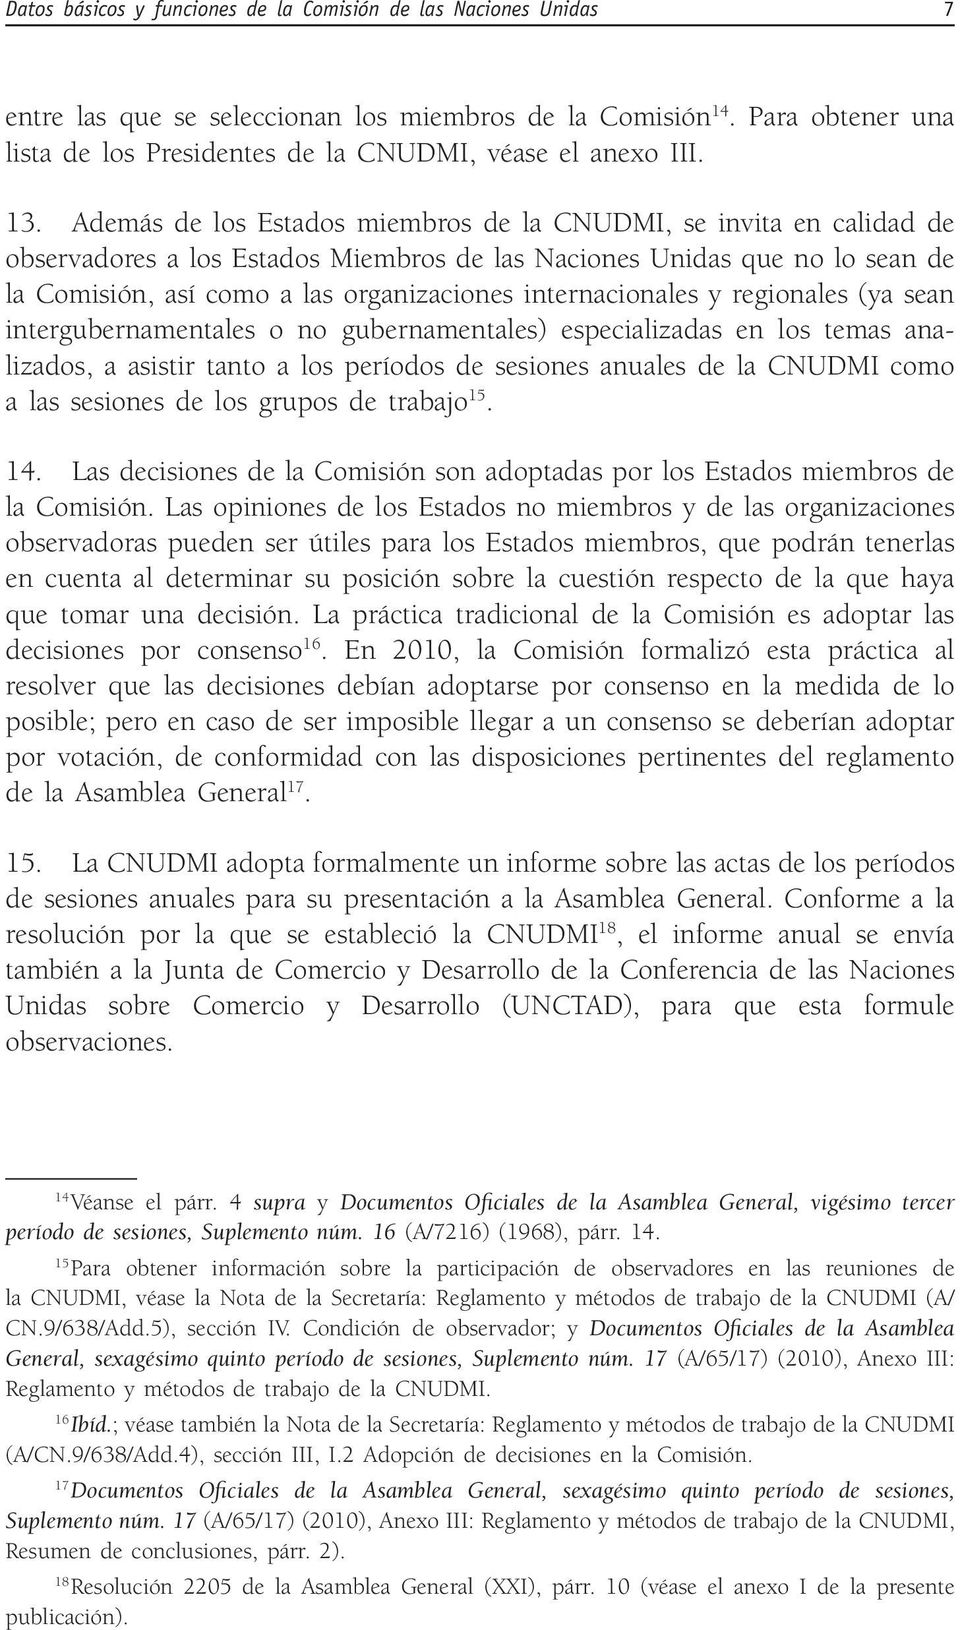 Además de los Estados miembros de la CNUDMI, se invita en calidad de observadores a los Estados Miembros de las Naciones Unidas que no lo sean de la Comisión, así como a las organizaciones